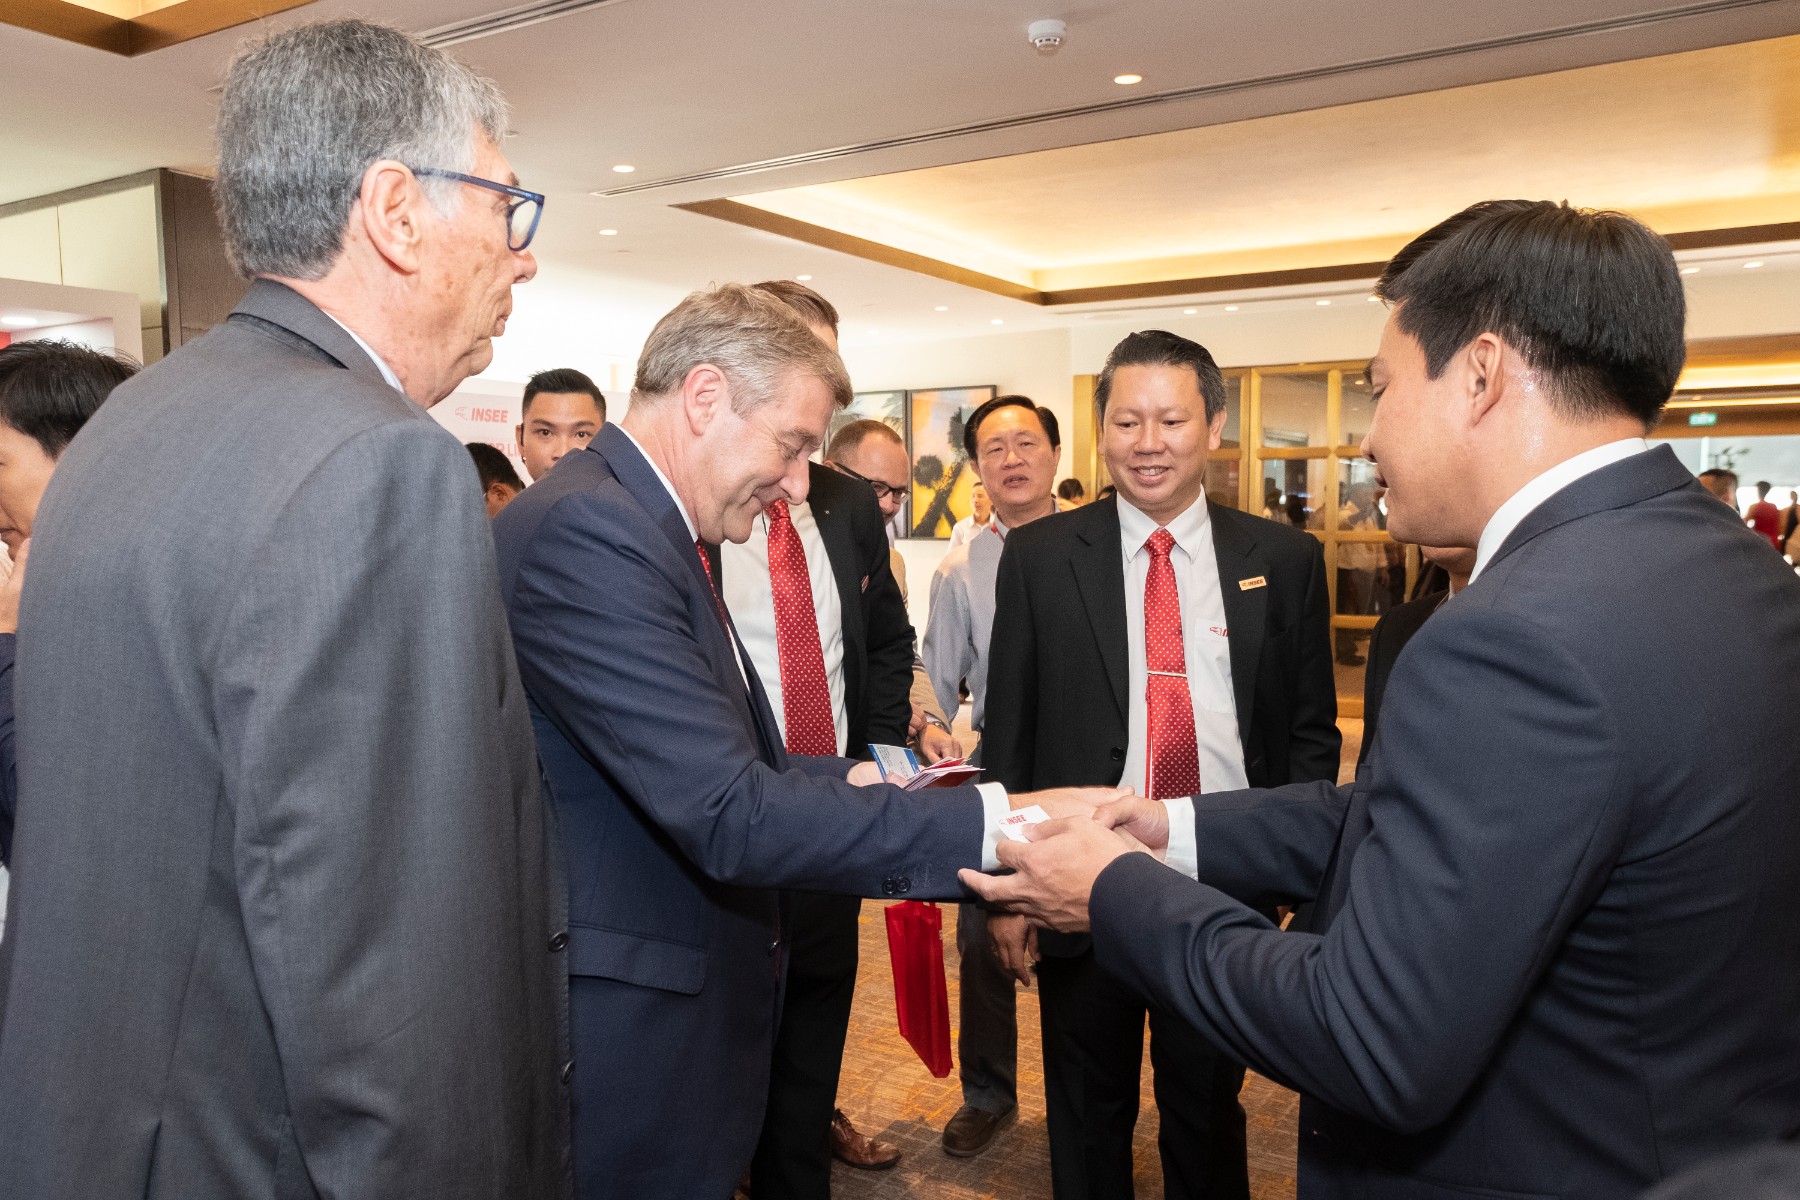 Insee Việt Nam tổ chức Hội nghị Triển vọng cơ sở hạ tầng 2018 “Build for life”